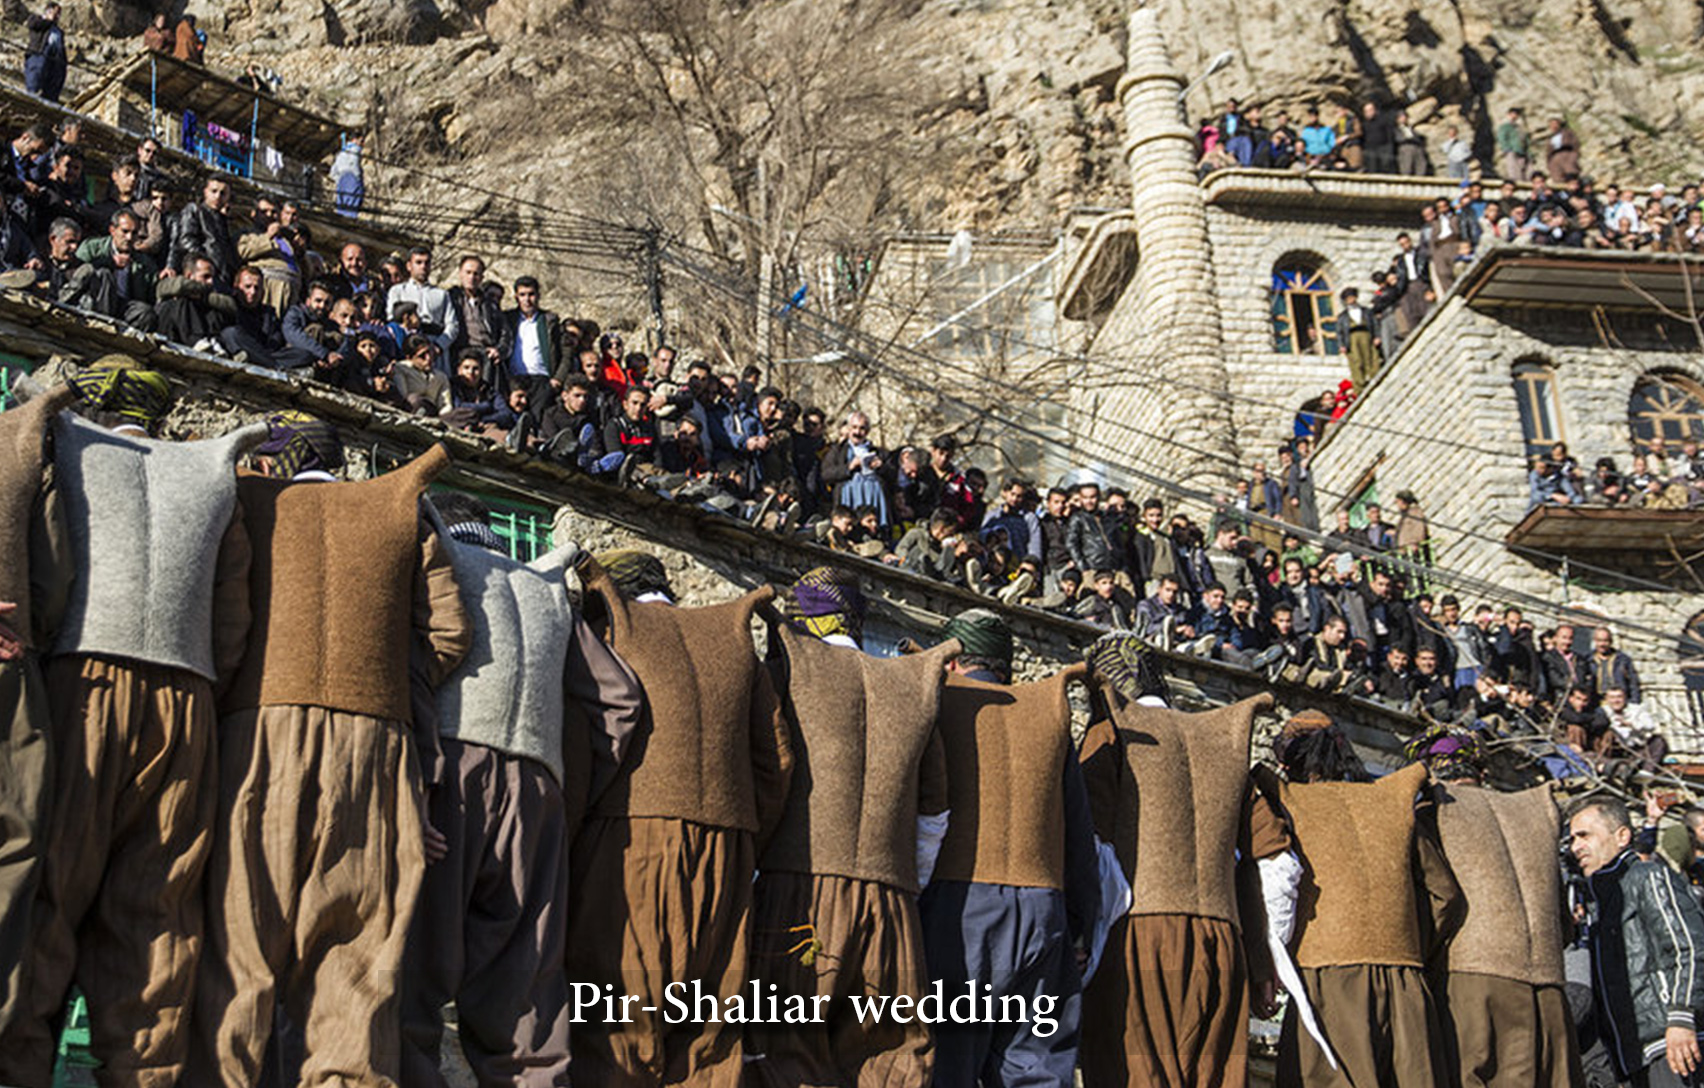 Pir-Shalyar ceremony